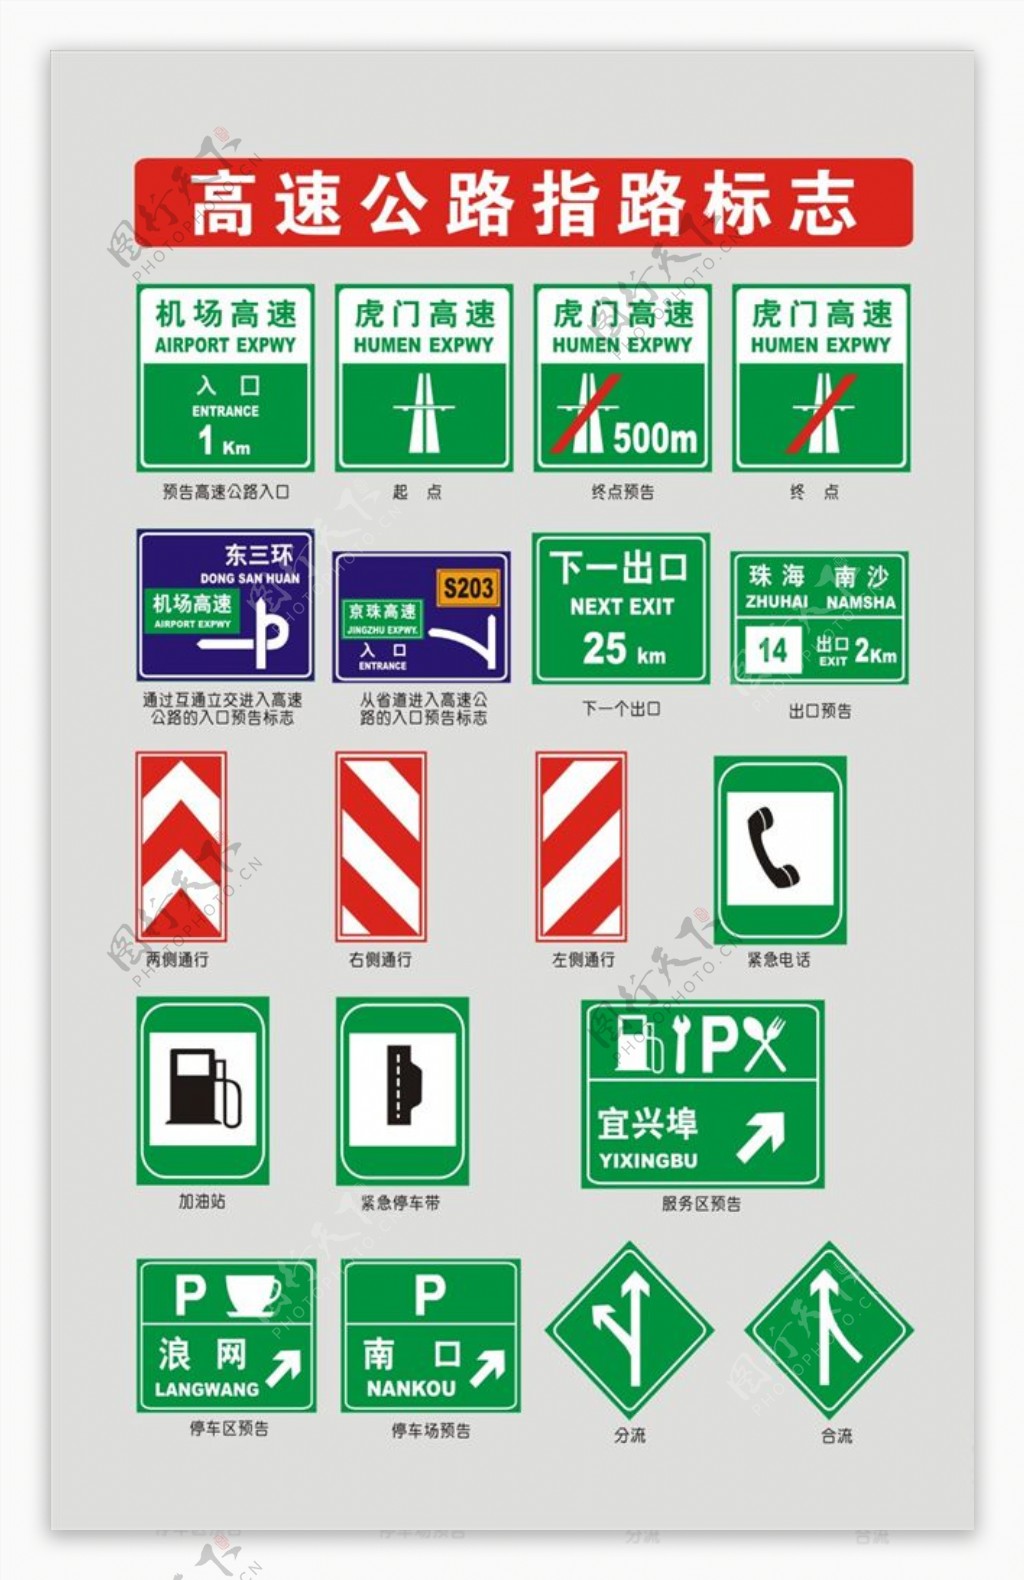 交通标志交通标志大全及图解 各种交通标志及含义图片